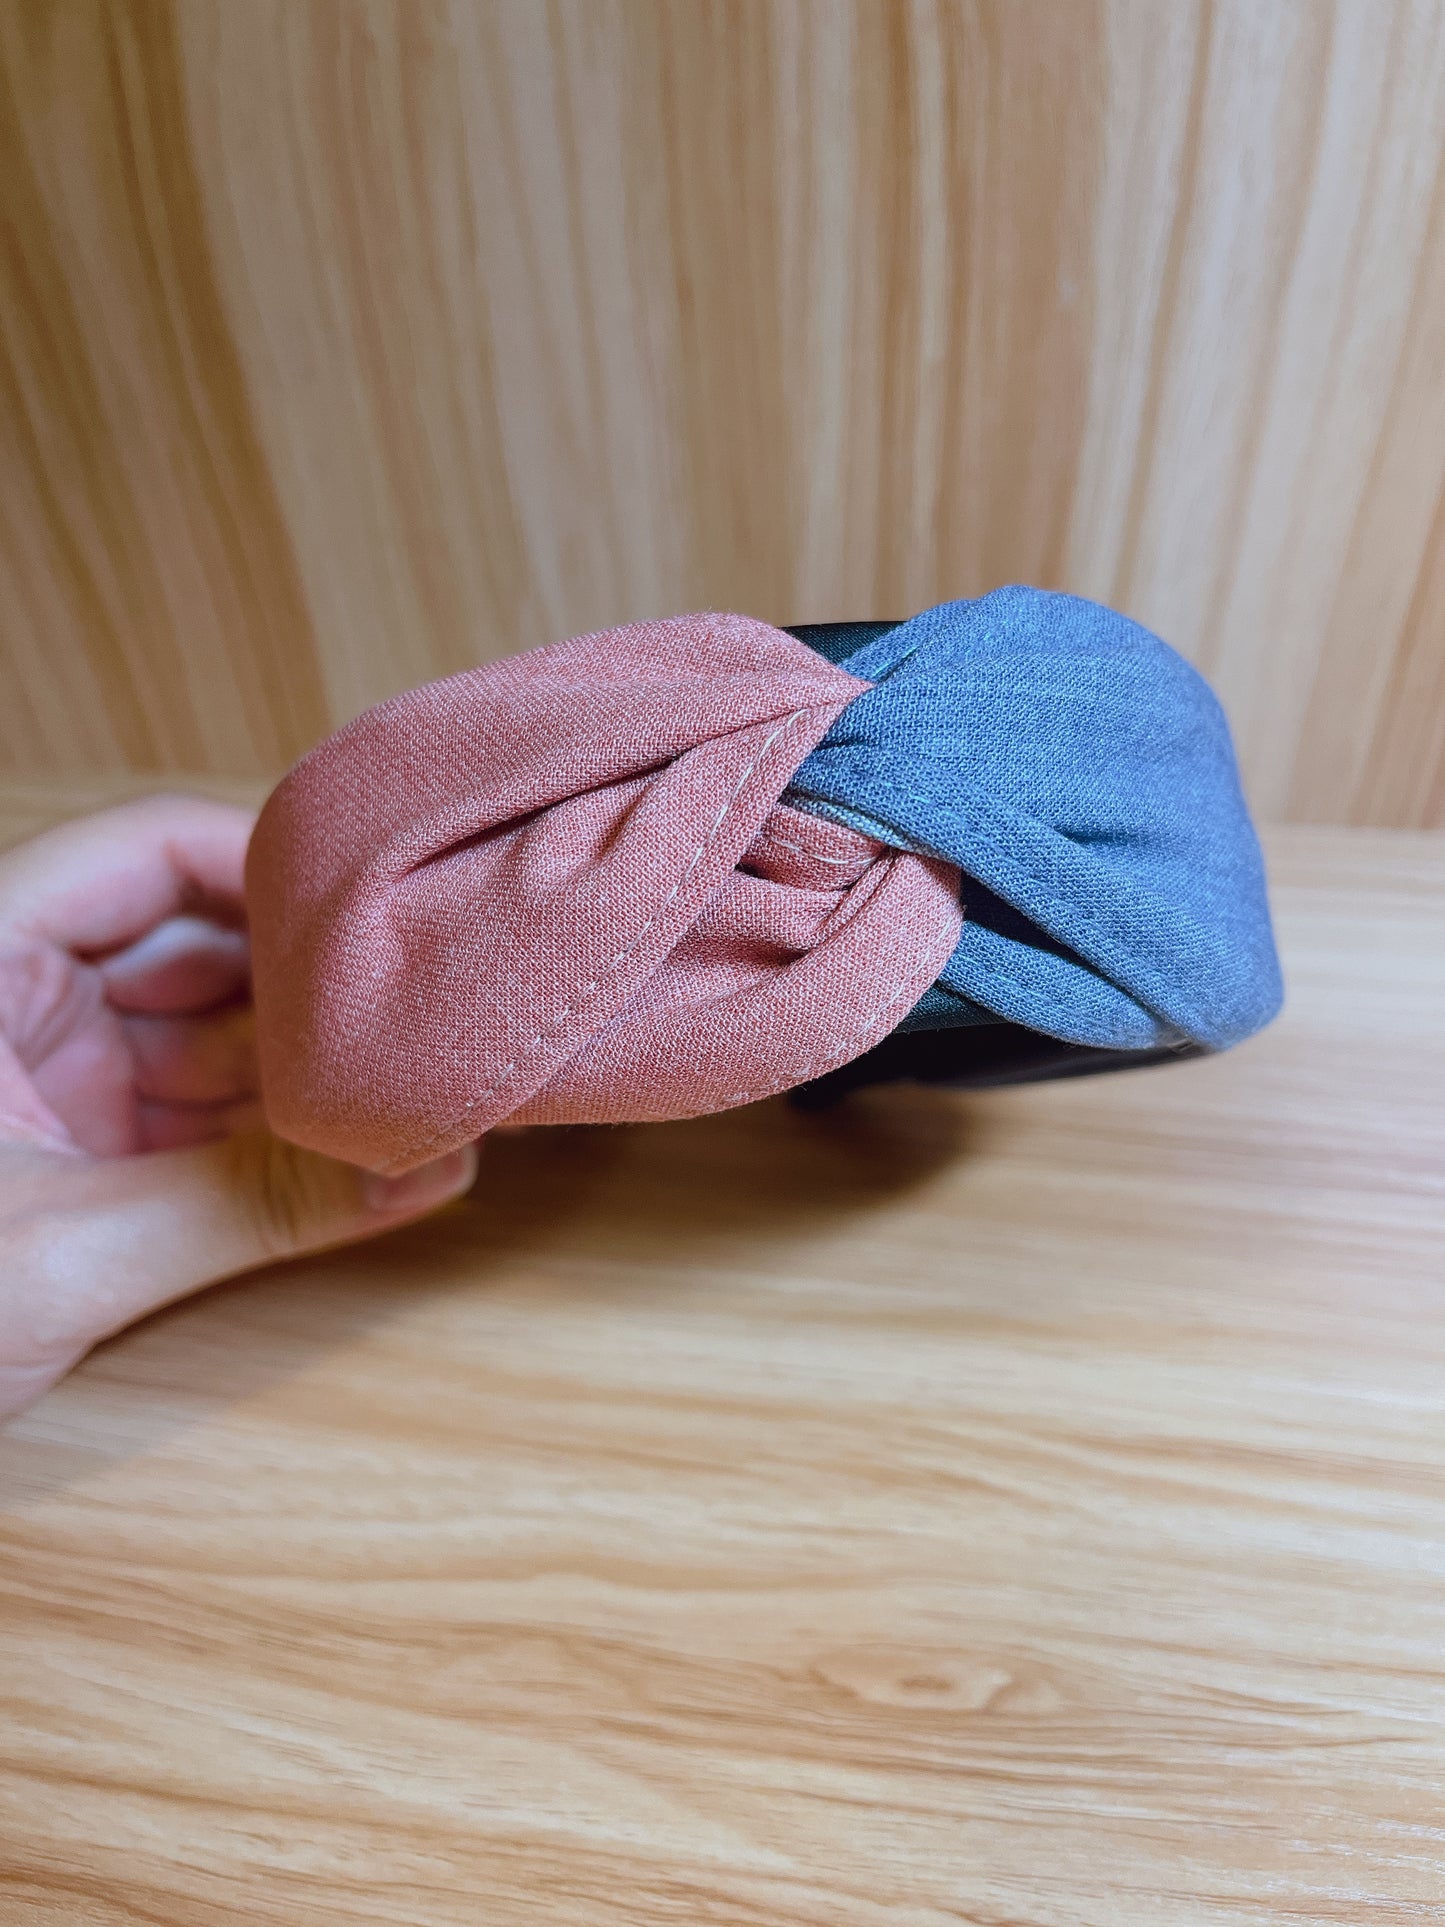 韓式人工髮箍-  粉紅天藍色拼布髮箍